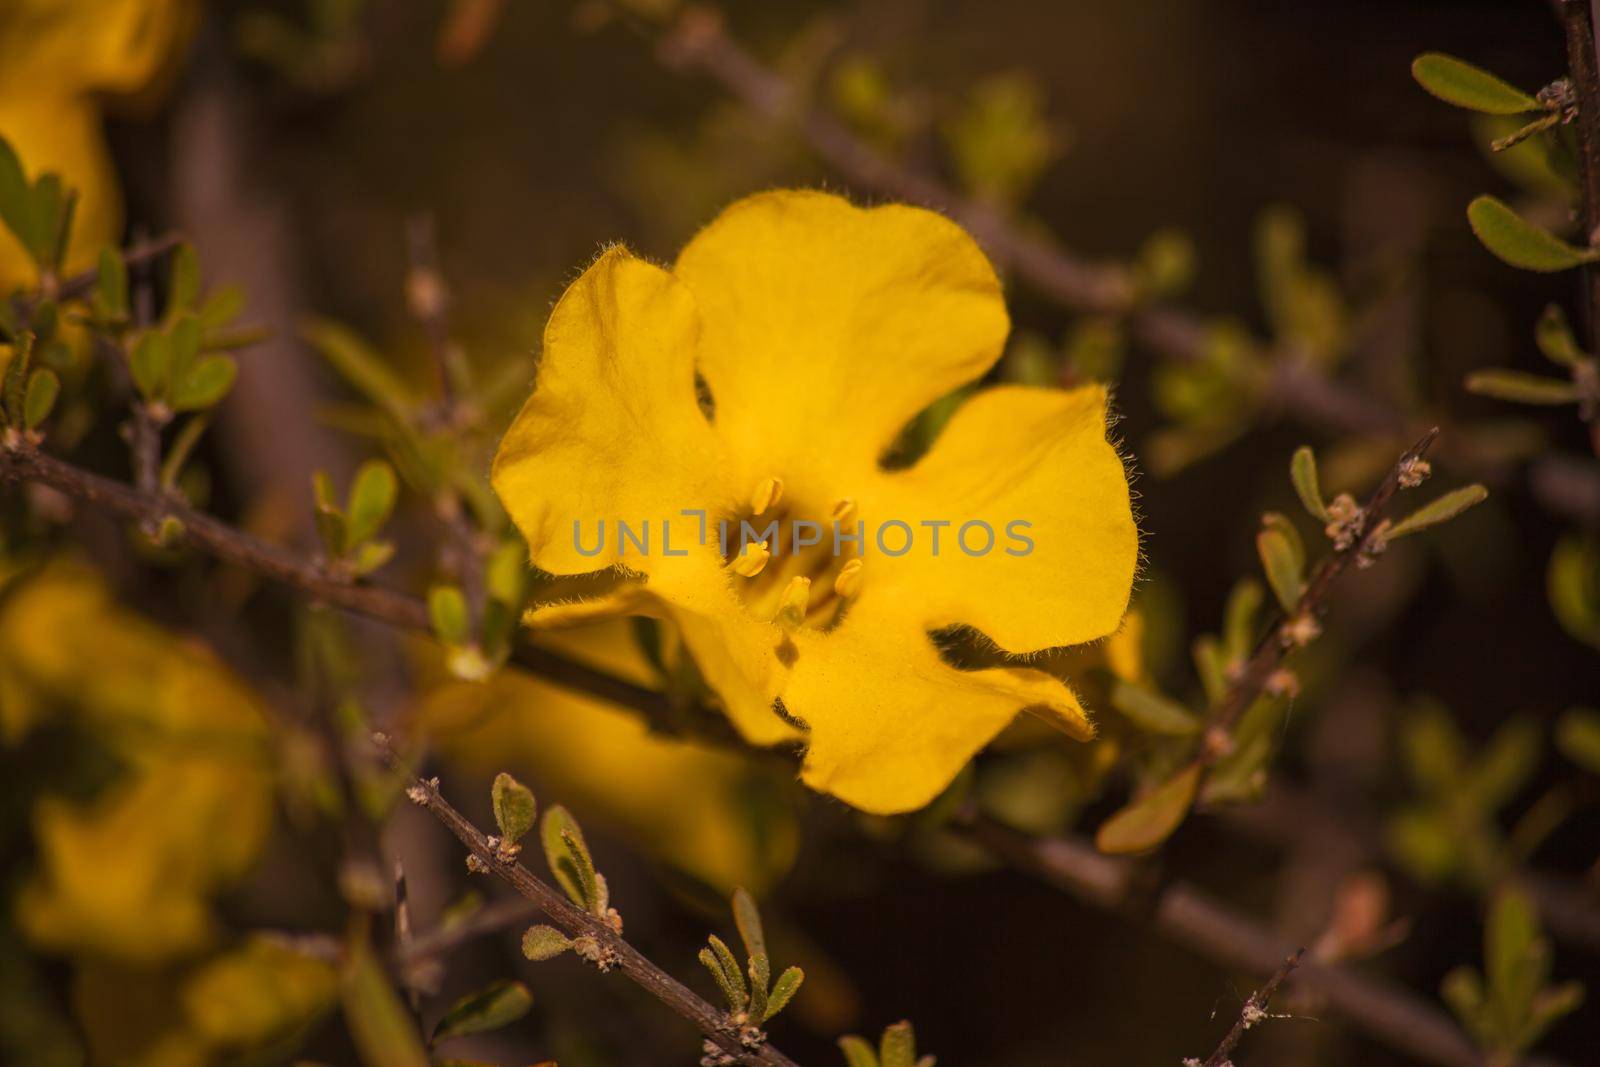 Flowers of the Karoo Gold Rhigozum obovatum Burch 14652 by kobus_peche